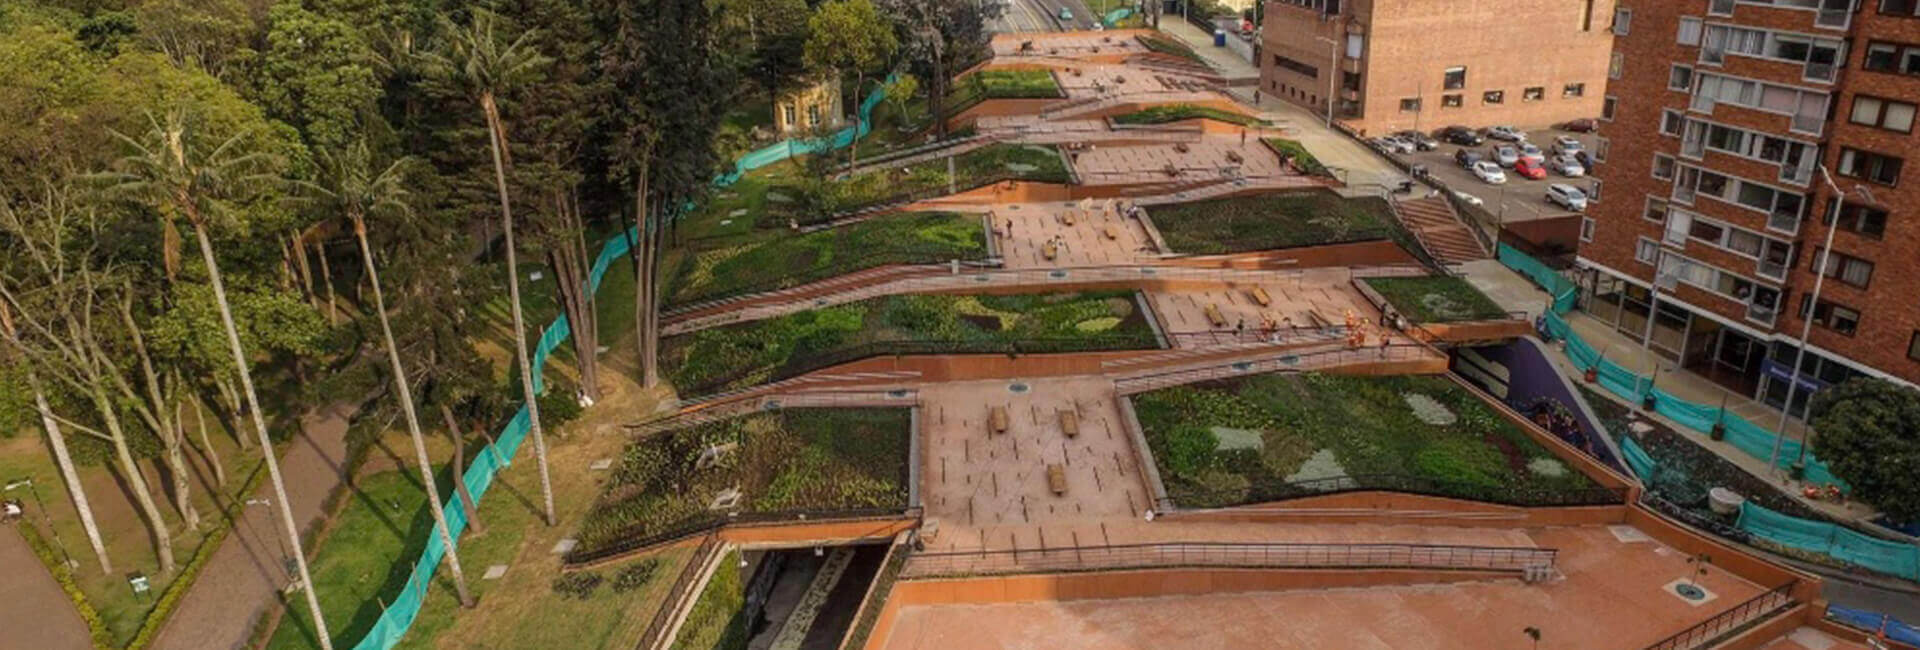 Parque Bicentenario Bogotá